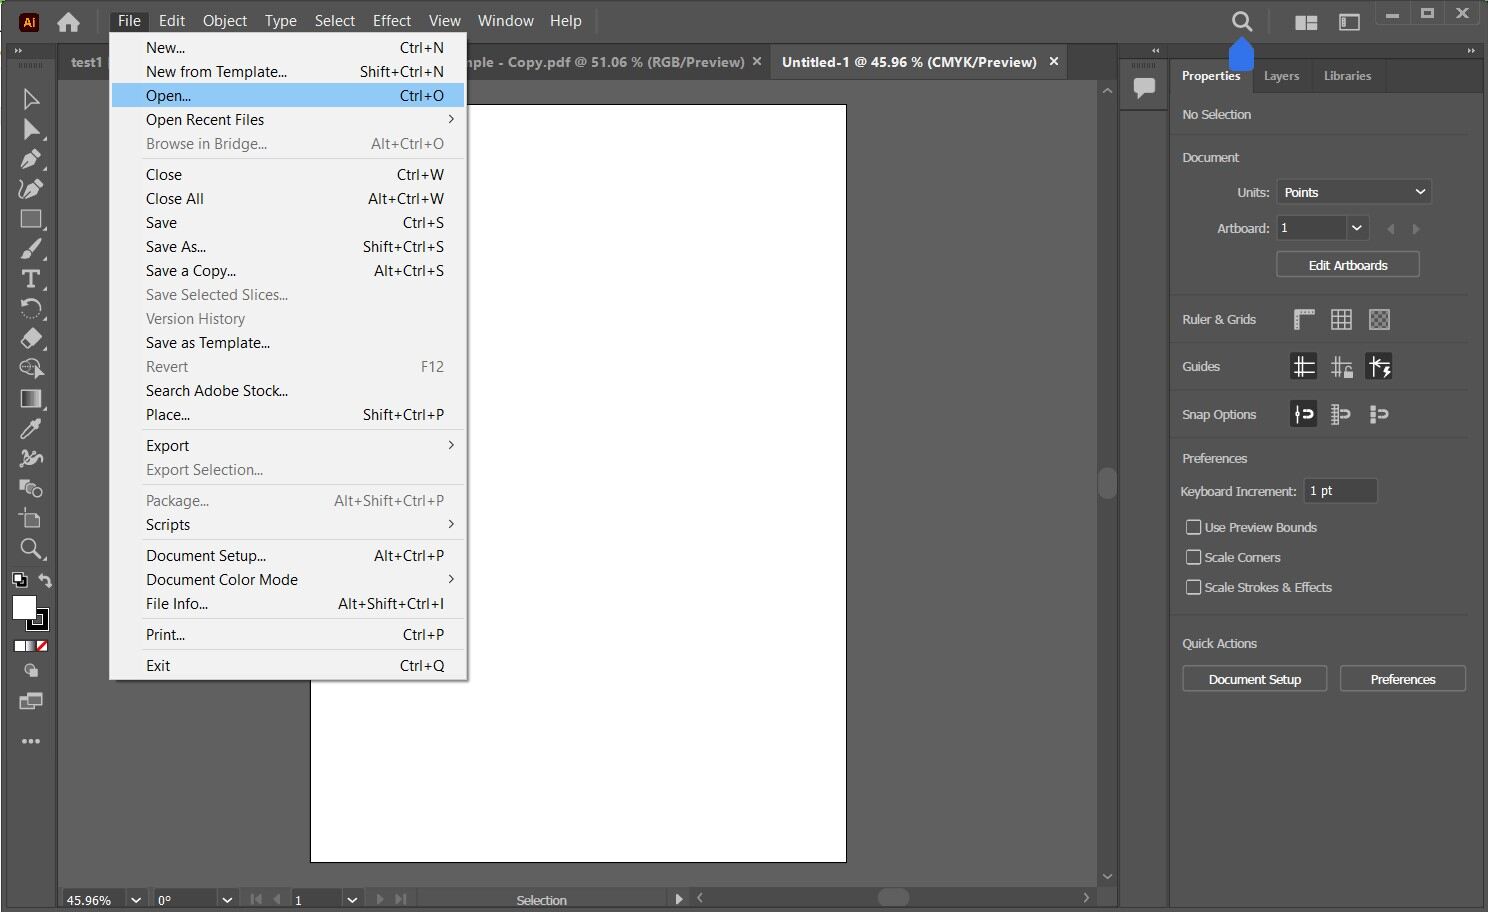 Open file in Adobe Illustrator.